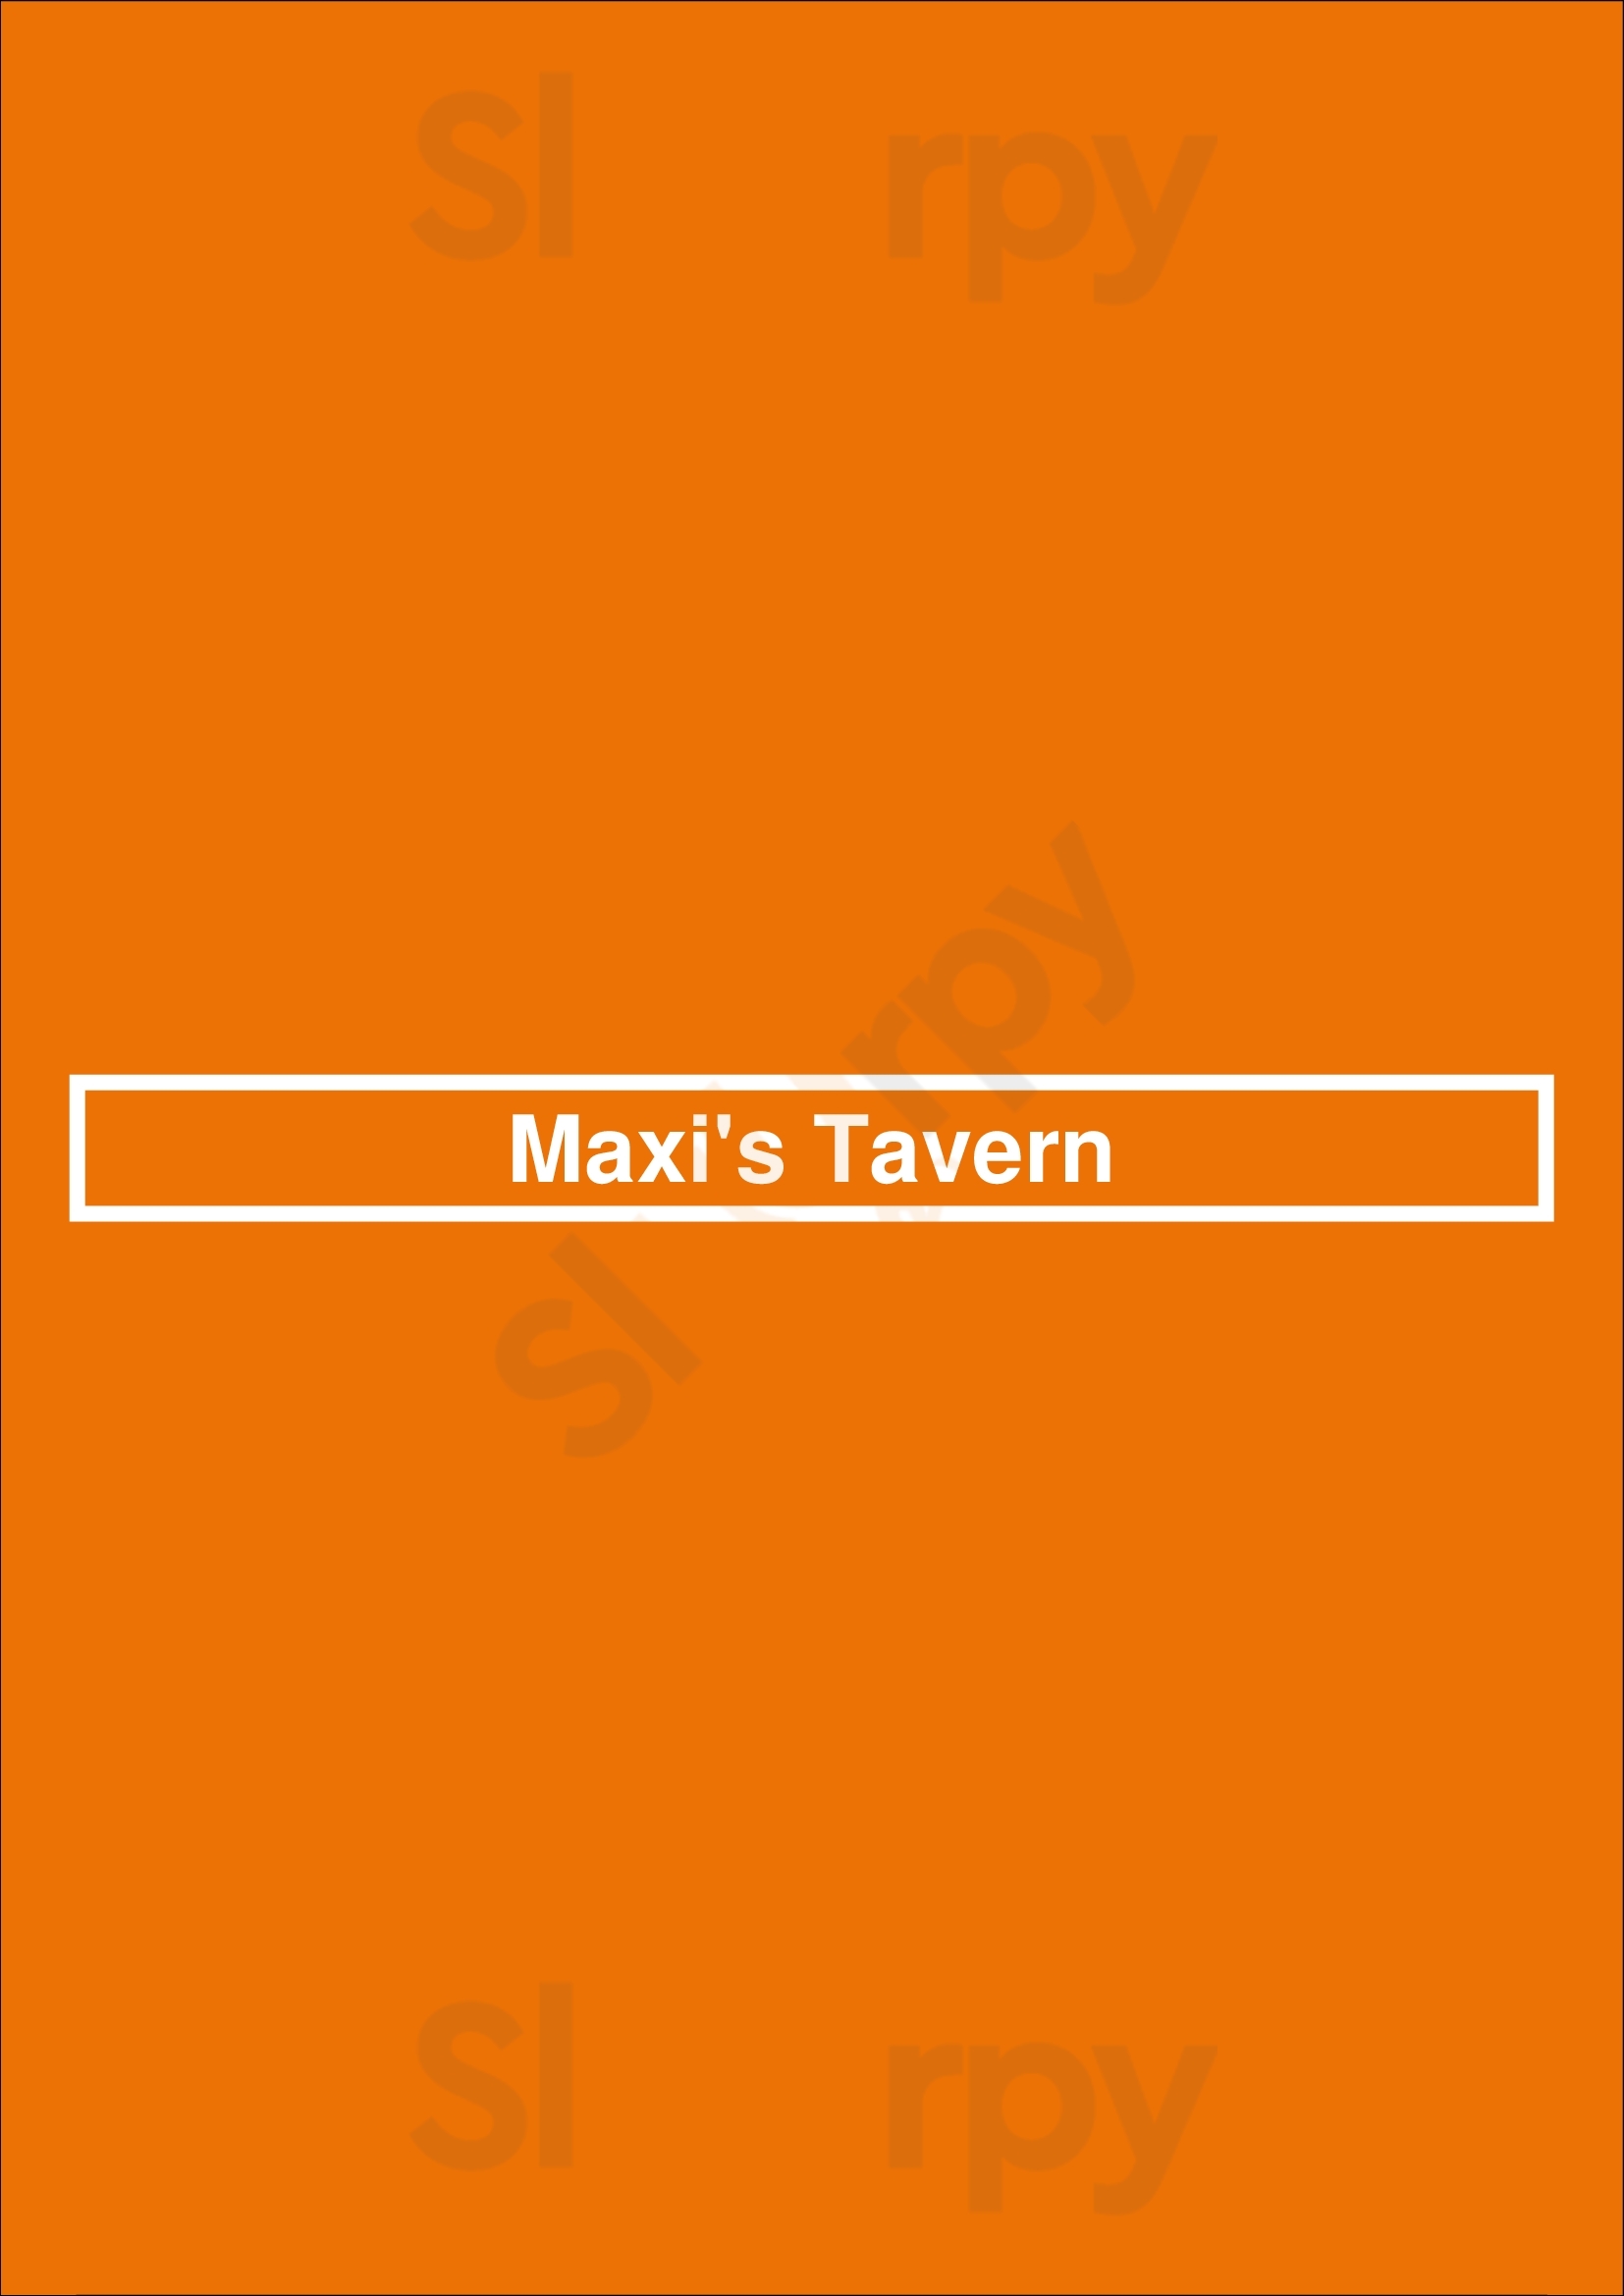 Maxi's Tavern Mogendorf Menu - 1